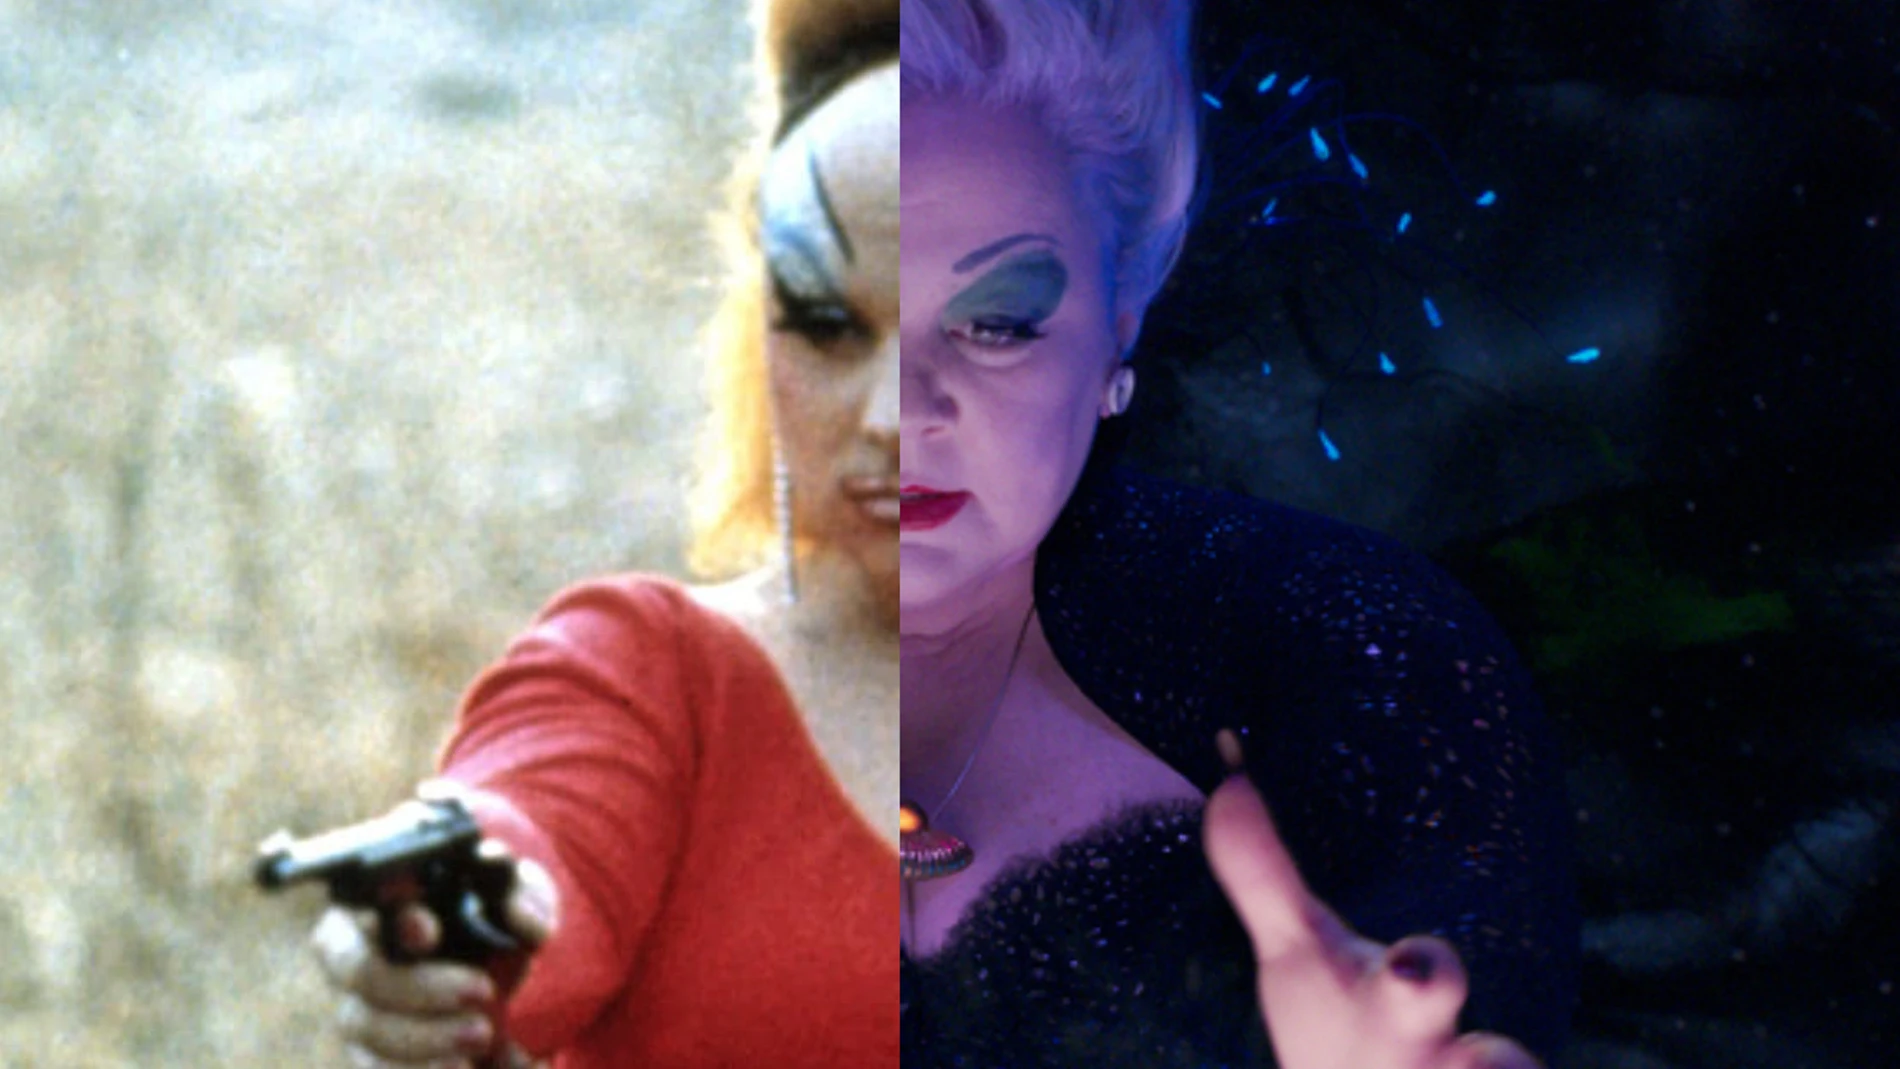 A la izda., la Drag Queen Divine, colaboradora de John Waters, a la dcha., la actriz Melissa McCarthy en "La sirenita", como Úrsula